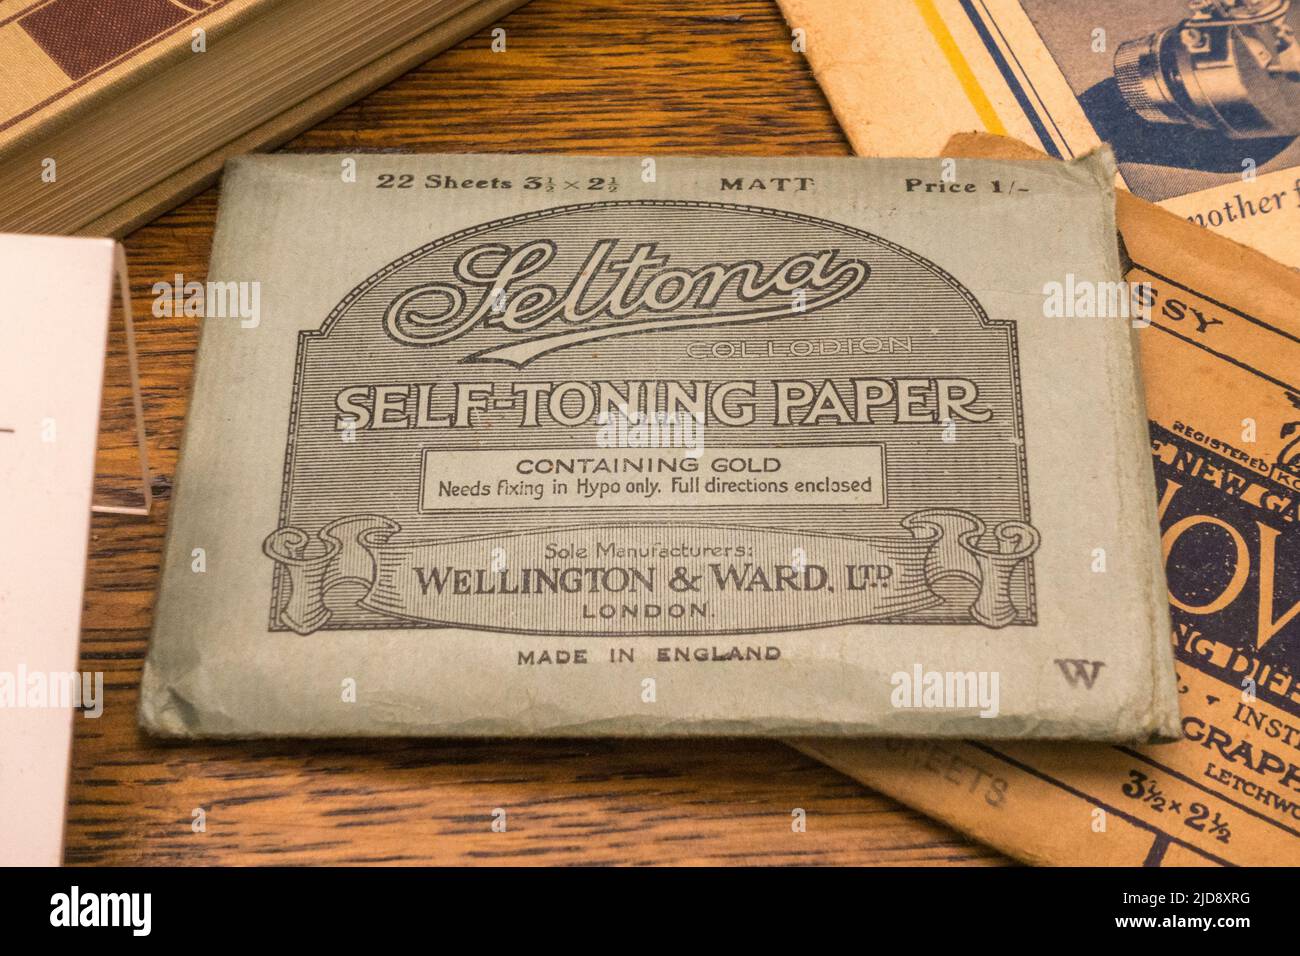 Un pacchetto di Seltona collodion auto-tonificante carta in mostra in un museo dei media. Foto Stock